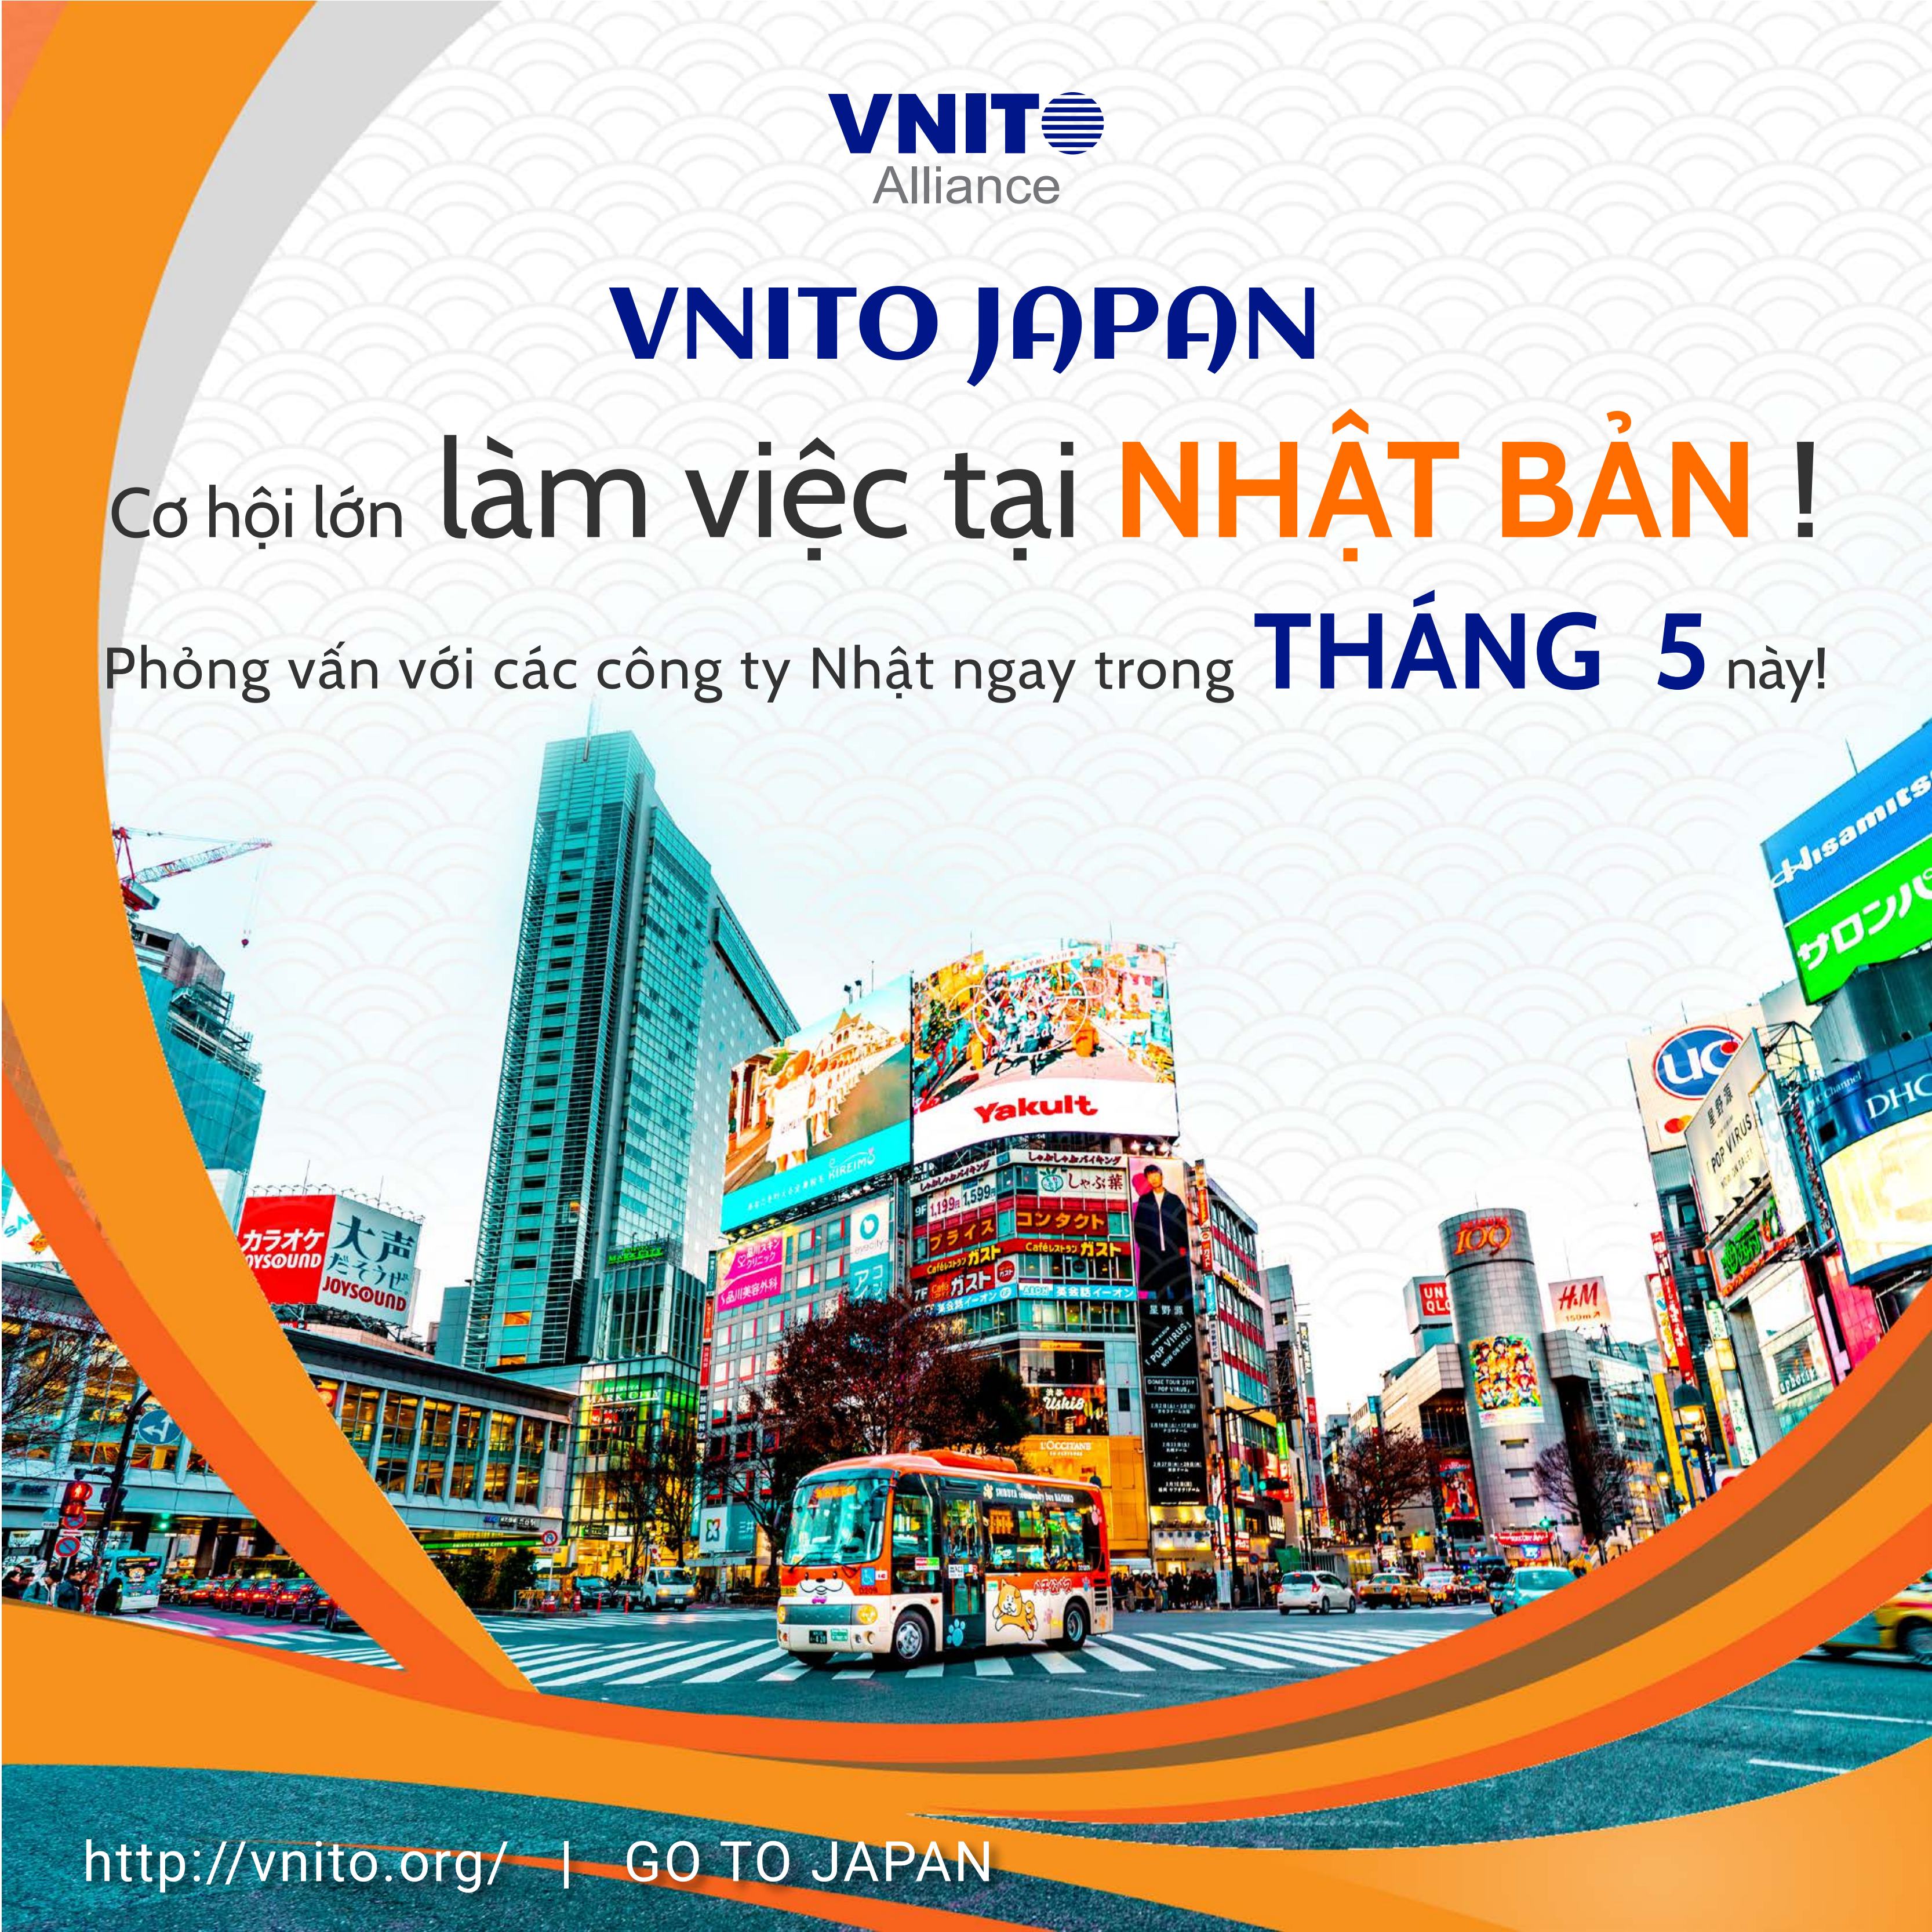 Cơ hội lớn làm việc tại Nhật Bản cùng VNITO Japan